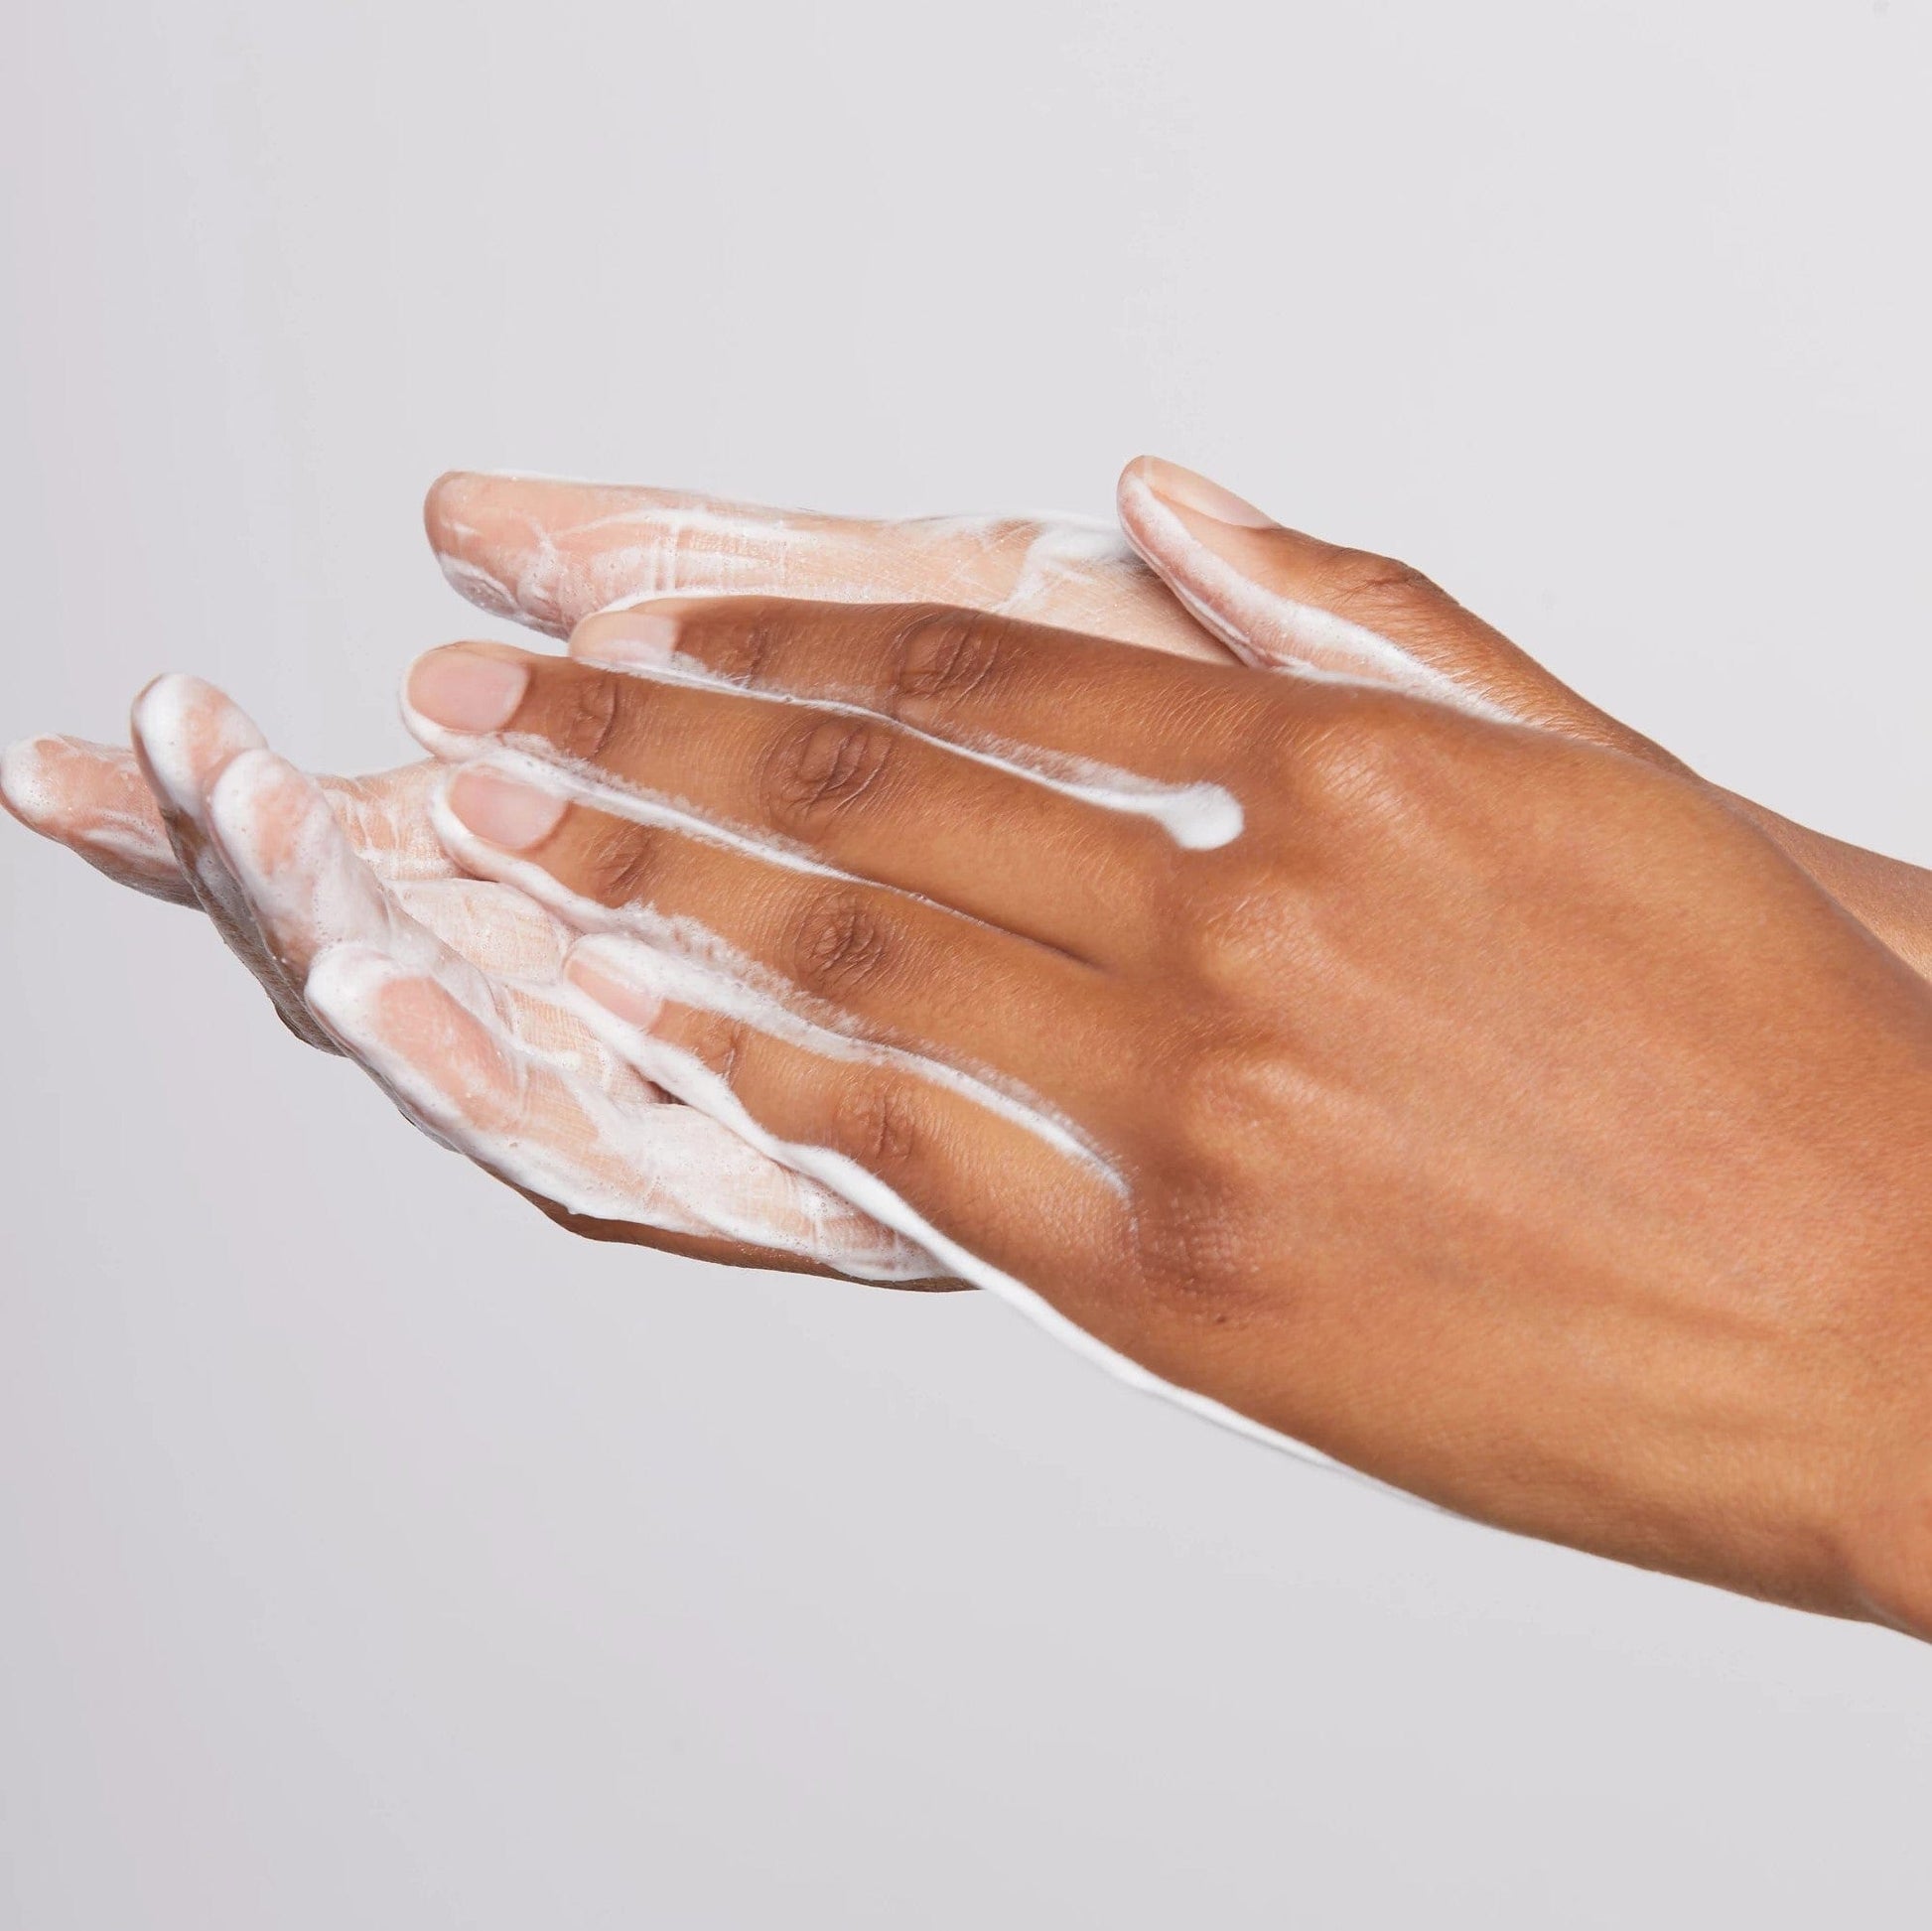 Hände reiben Hautpflegeprodukt auf.